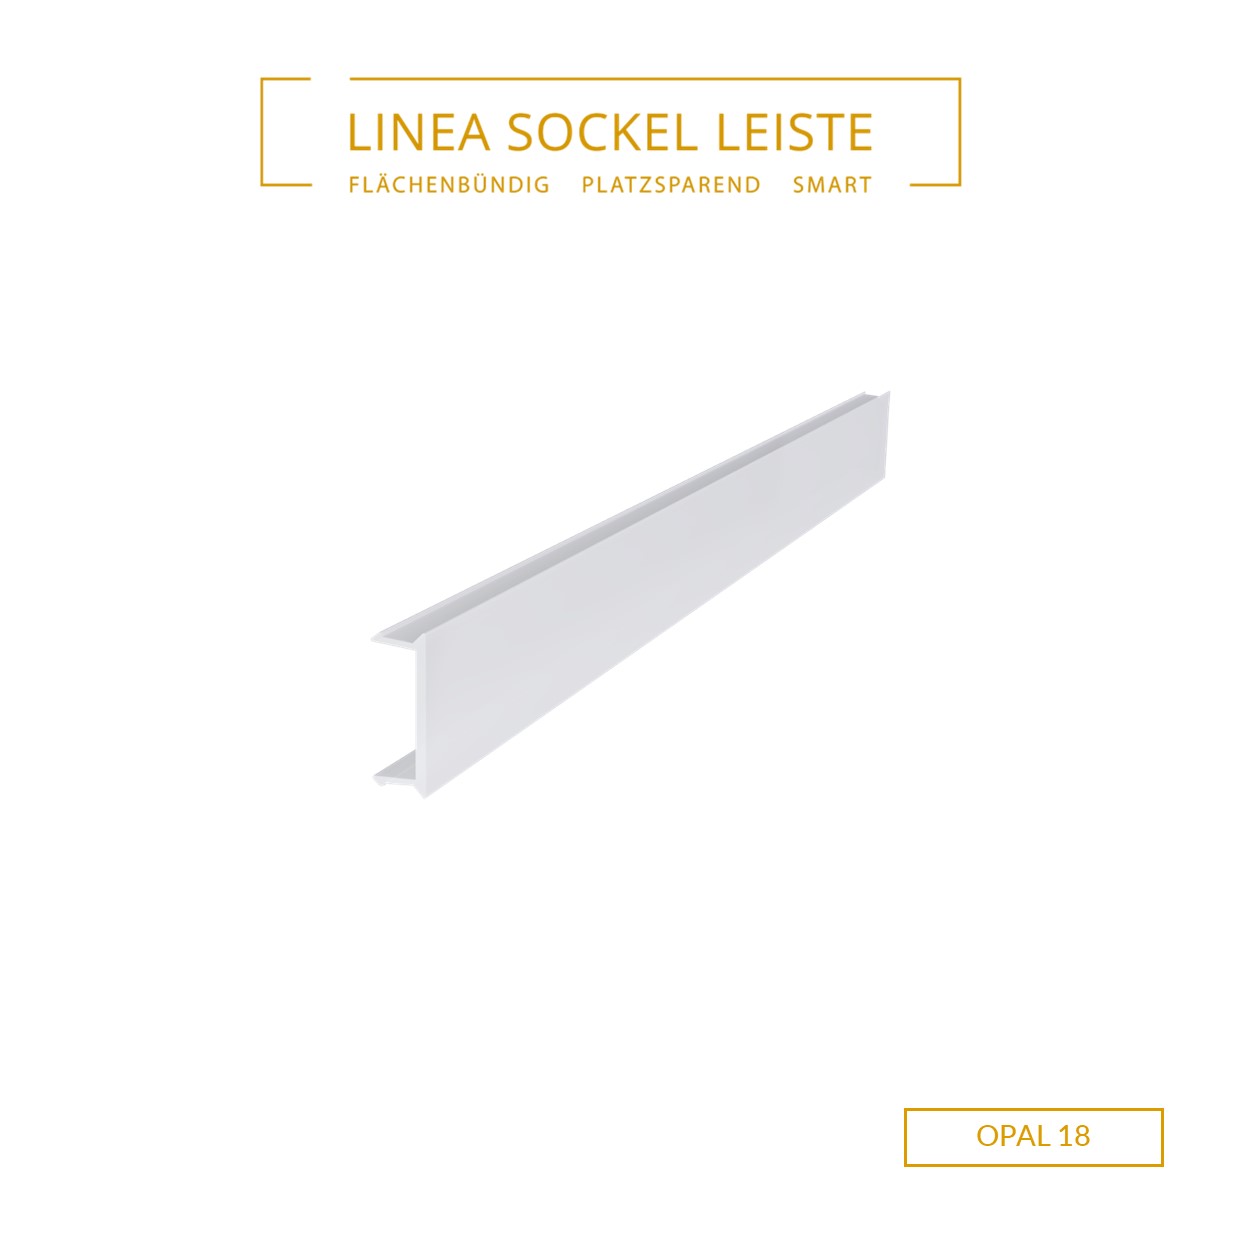 https://www.sockel-leiste.com/wp-content/uploads/2020/08/LINEA_OPAL18-1.jpg